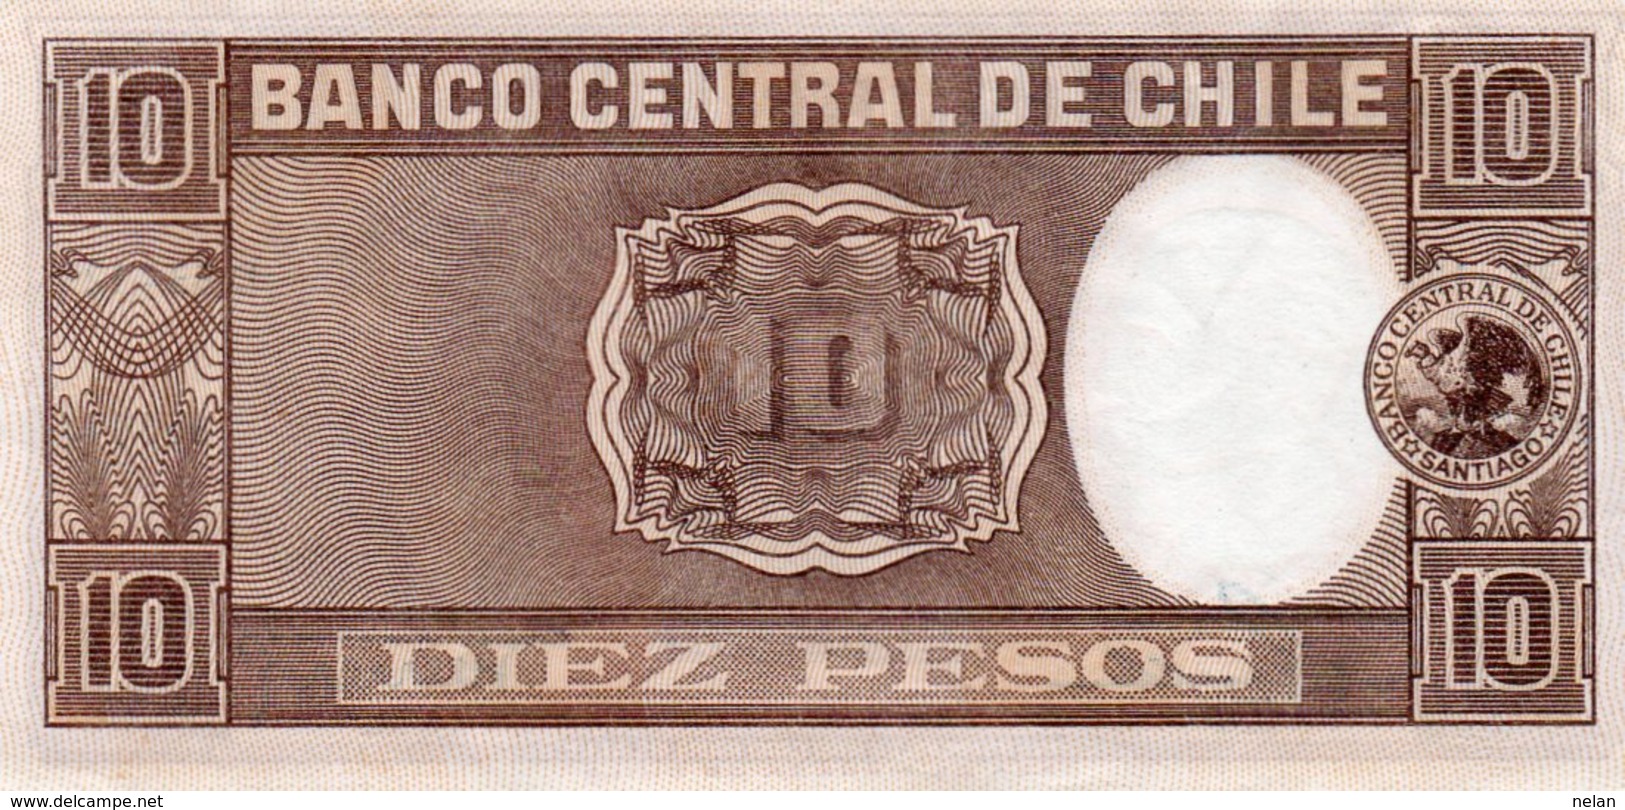 CHILE 10 PESOS 1958  P-120  AUNC - Chile